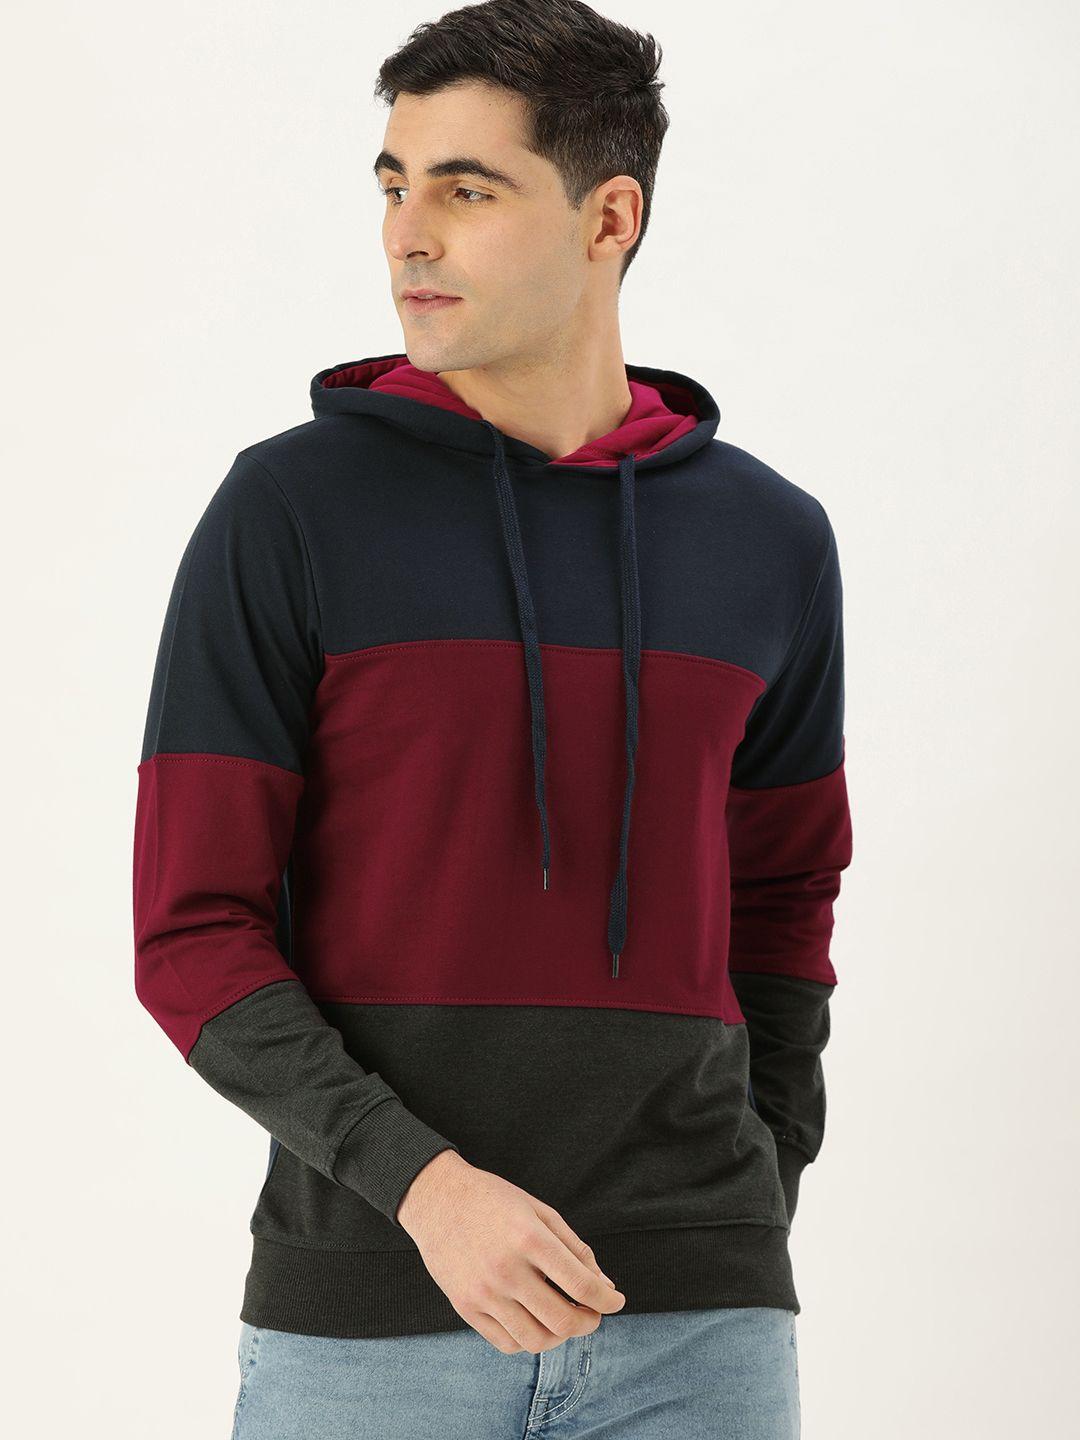 veirdo men navy blue & red colourblocked hooded sweatshirt